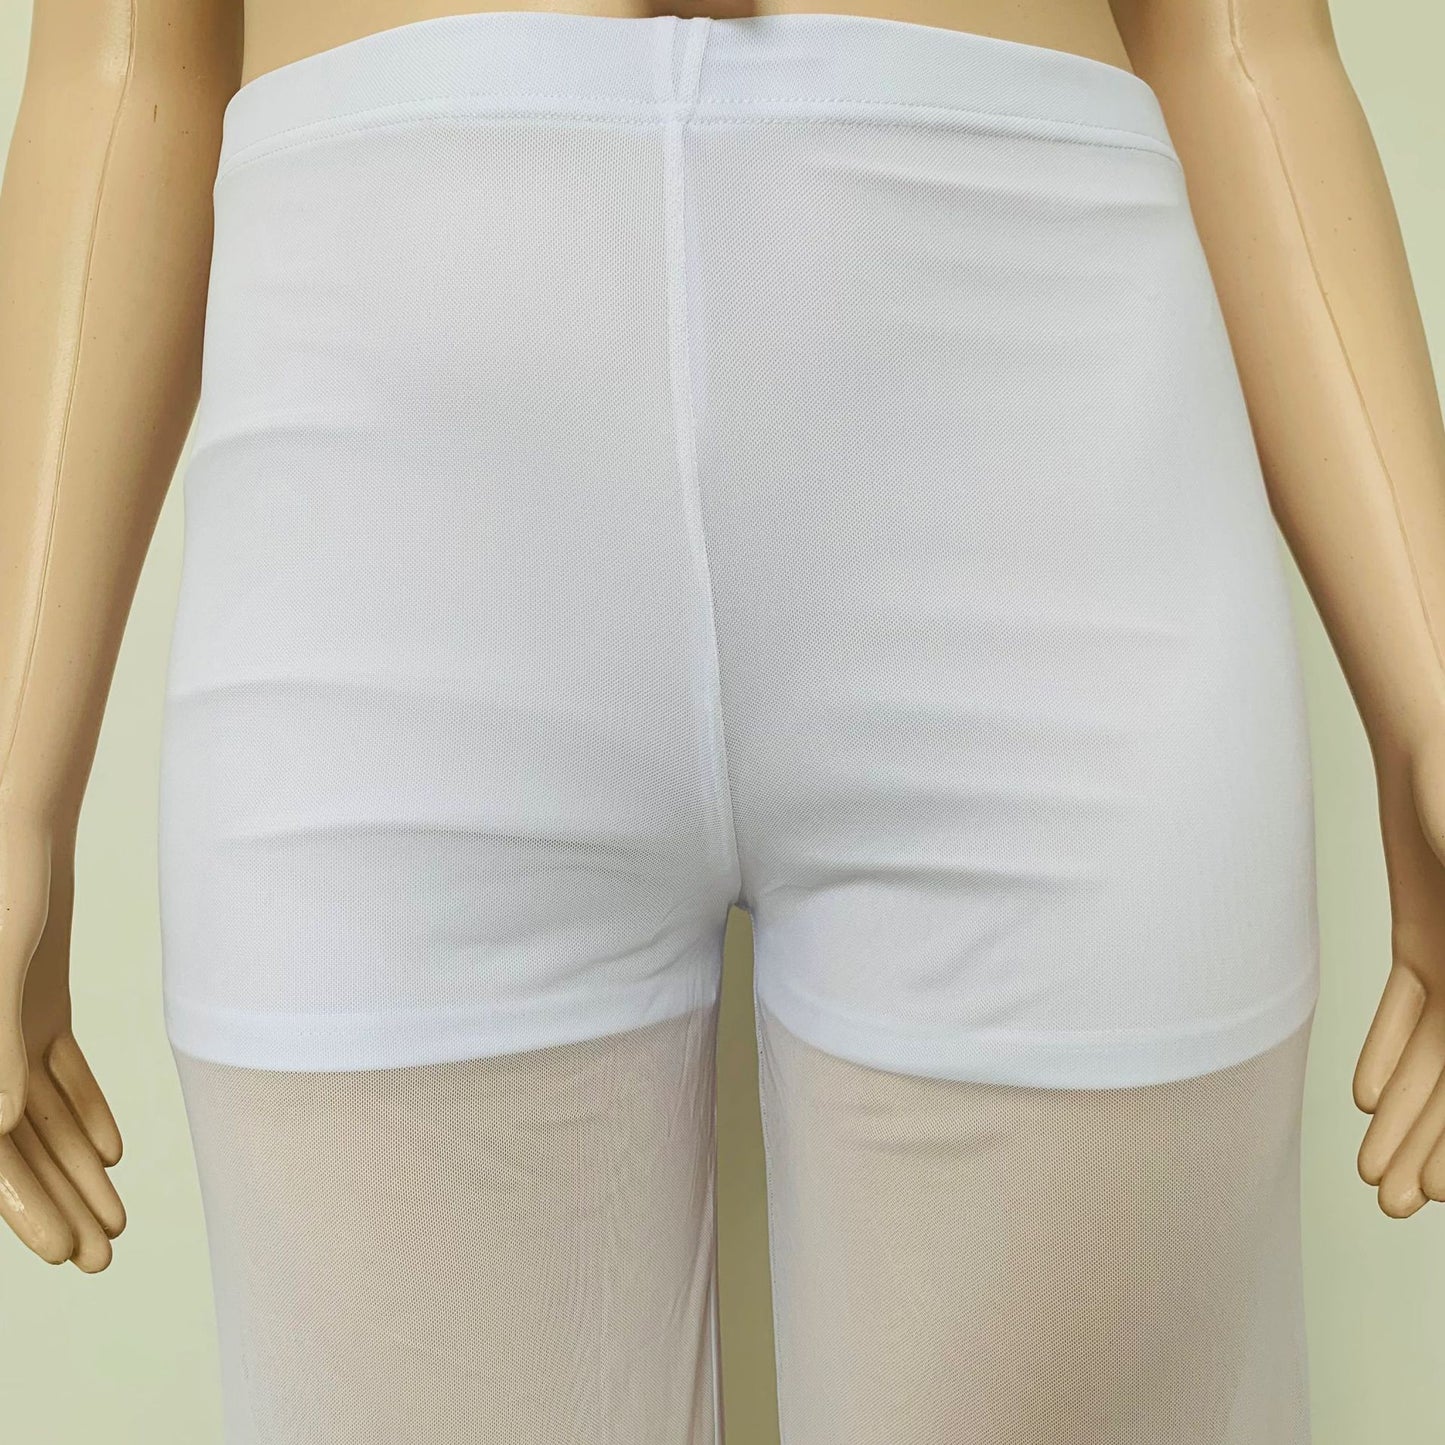 BamBam Summer Plus Size Women's Strapless Lace-Up Wide Leg Chiffon Two-Piece Pants Set - BamBam